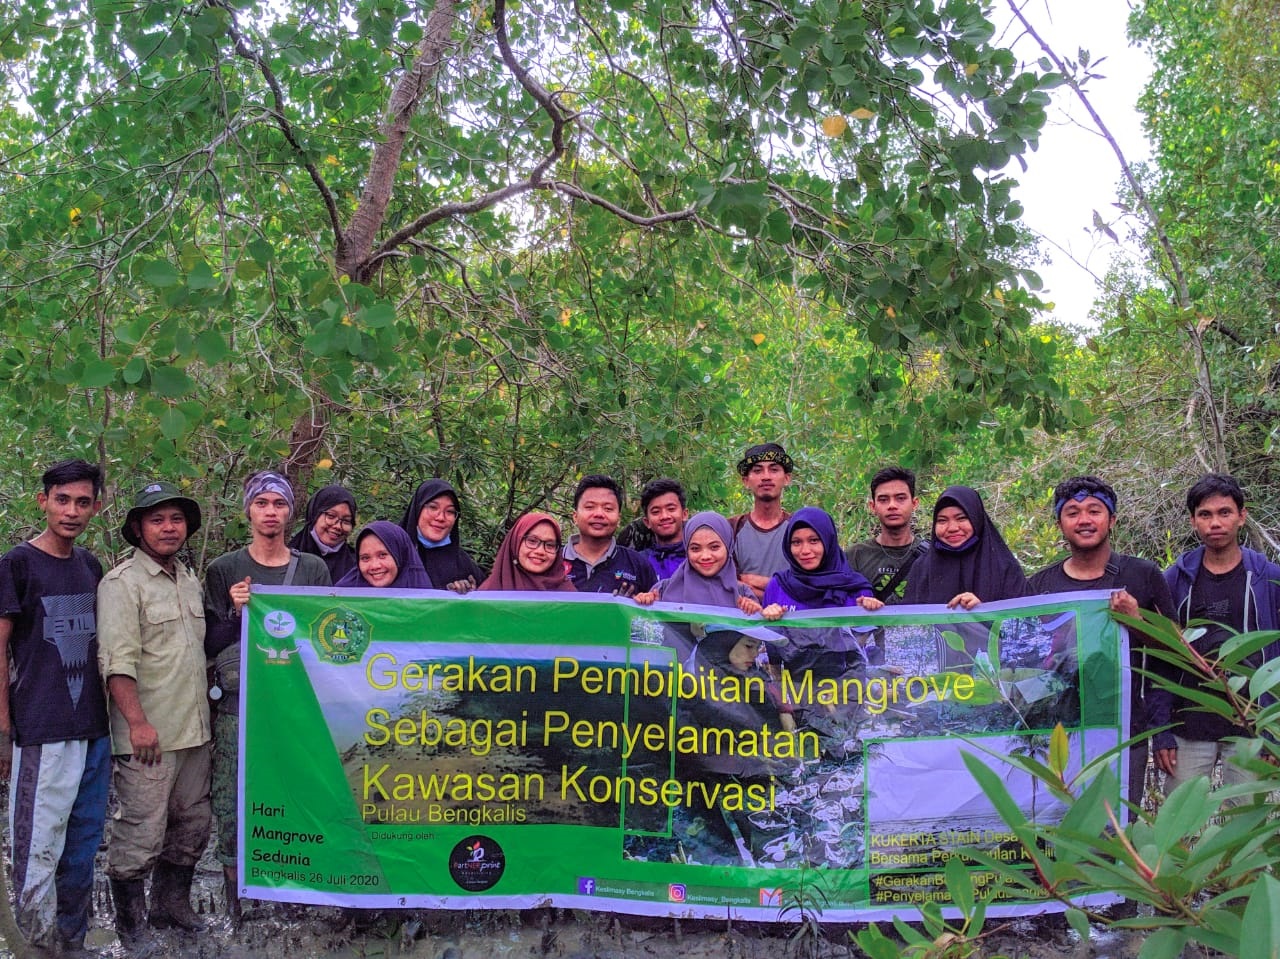 Peringati Hari Mangrove, Keslimasy Gelar Edukasi Pembibitan Mangrove Upaya Penyelamatan Kawasan Konservasi